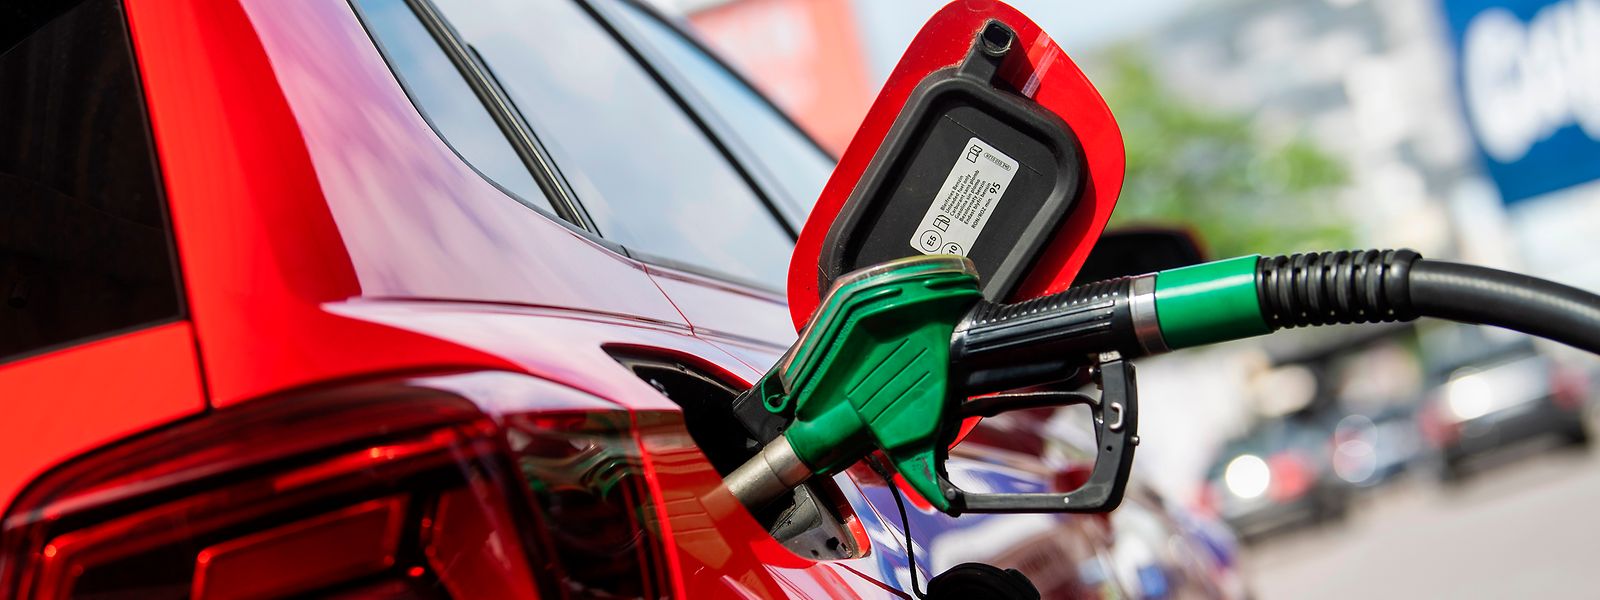 Abgesehen von Super 98 bleiben die Kraftstoff-Preise am Mittwoch unverändert.